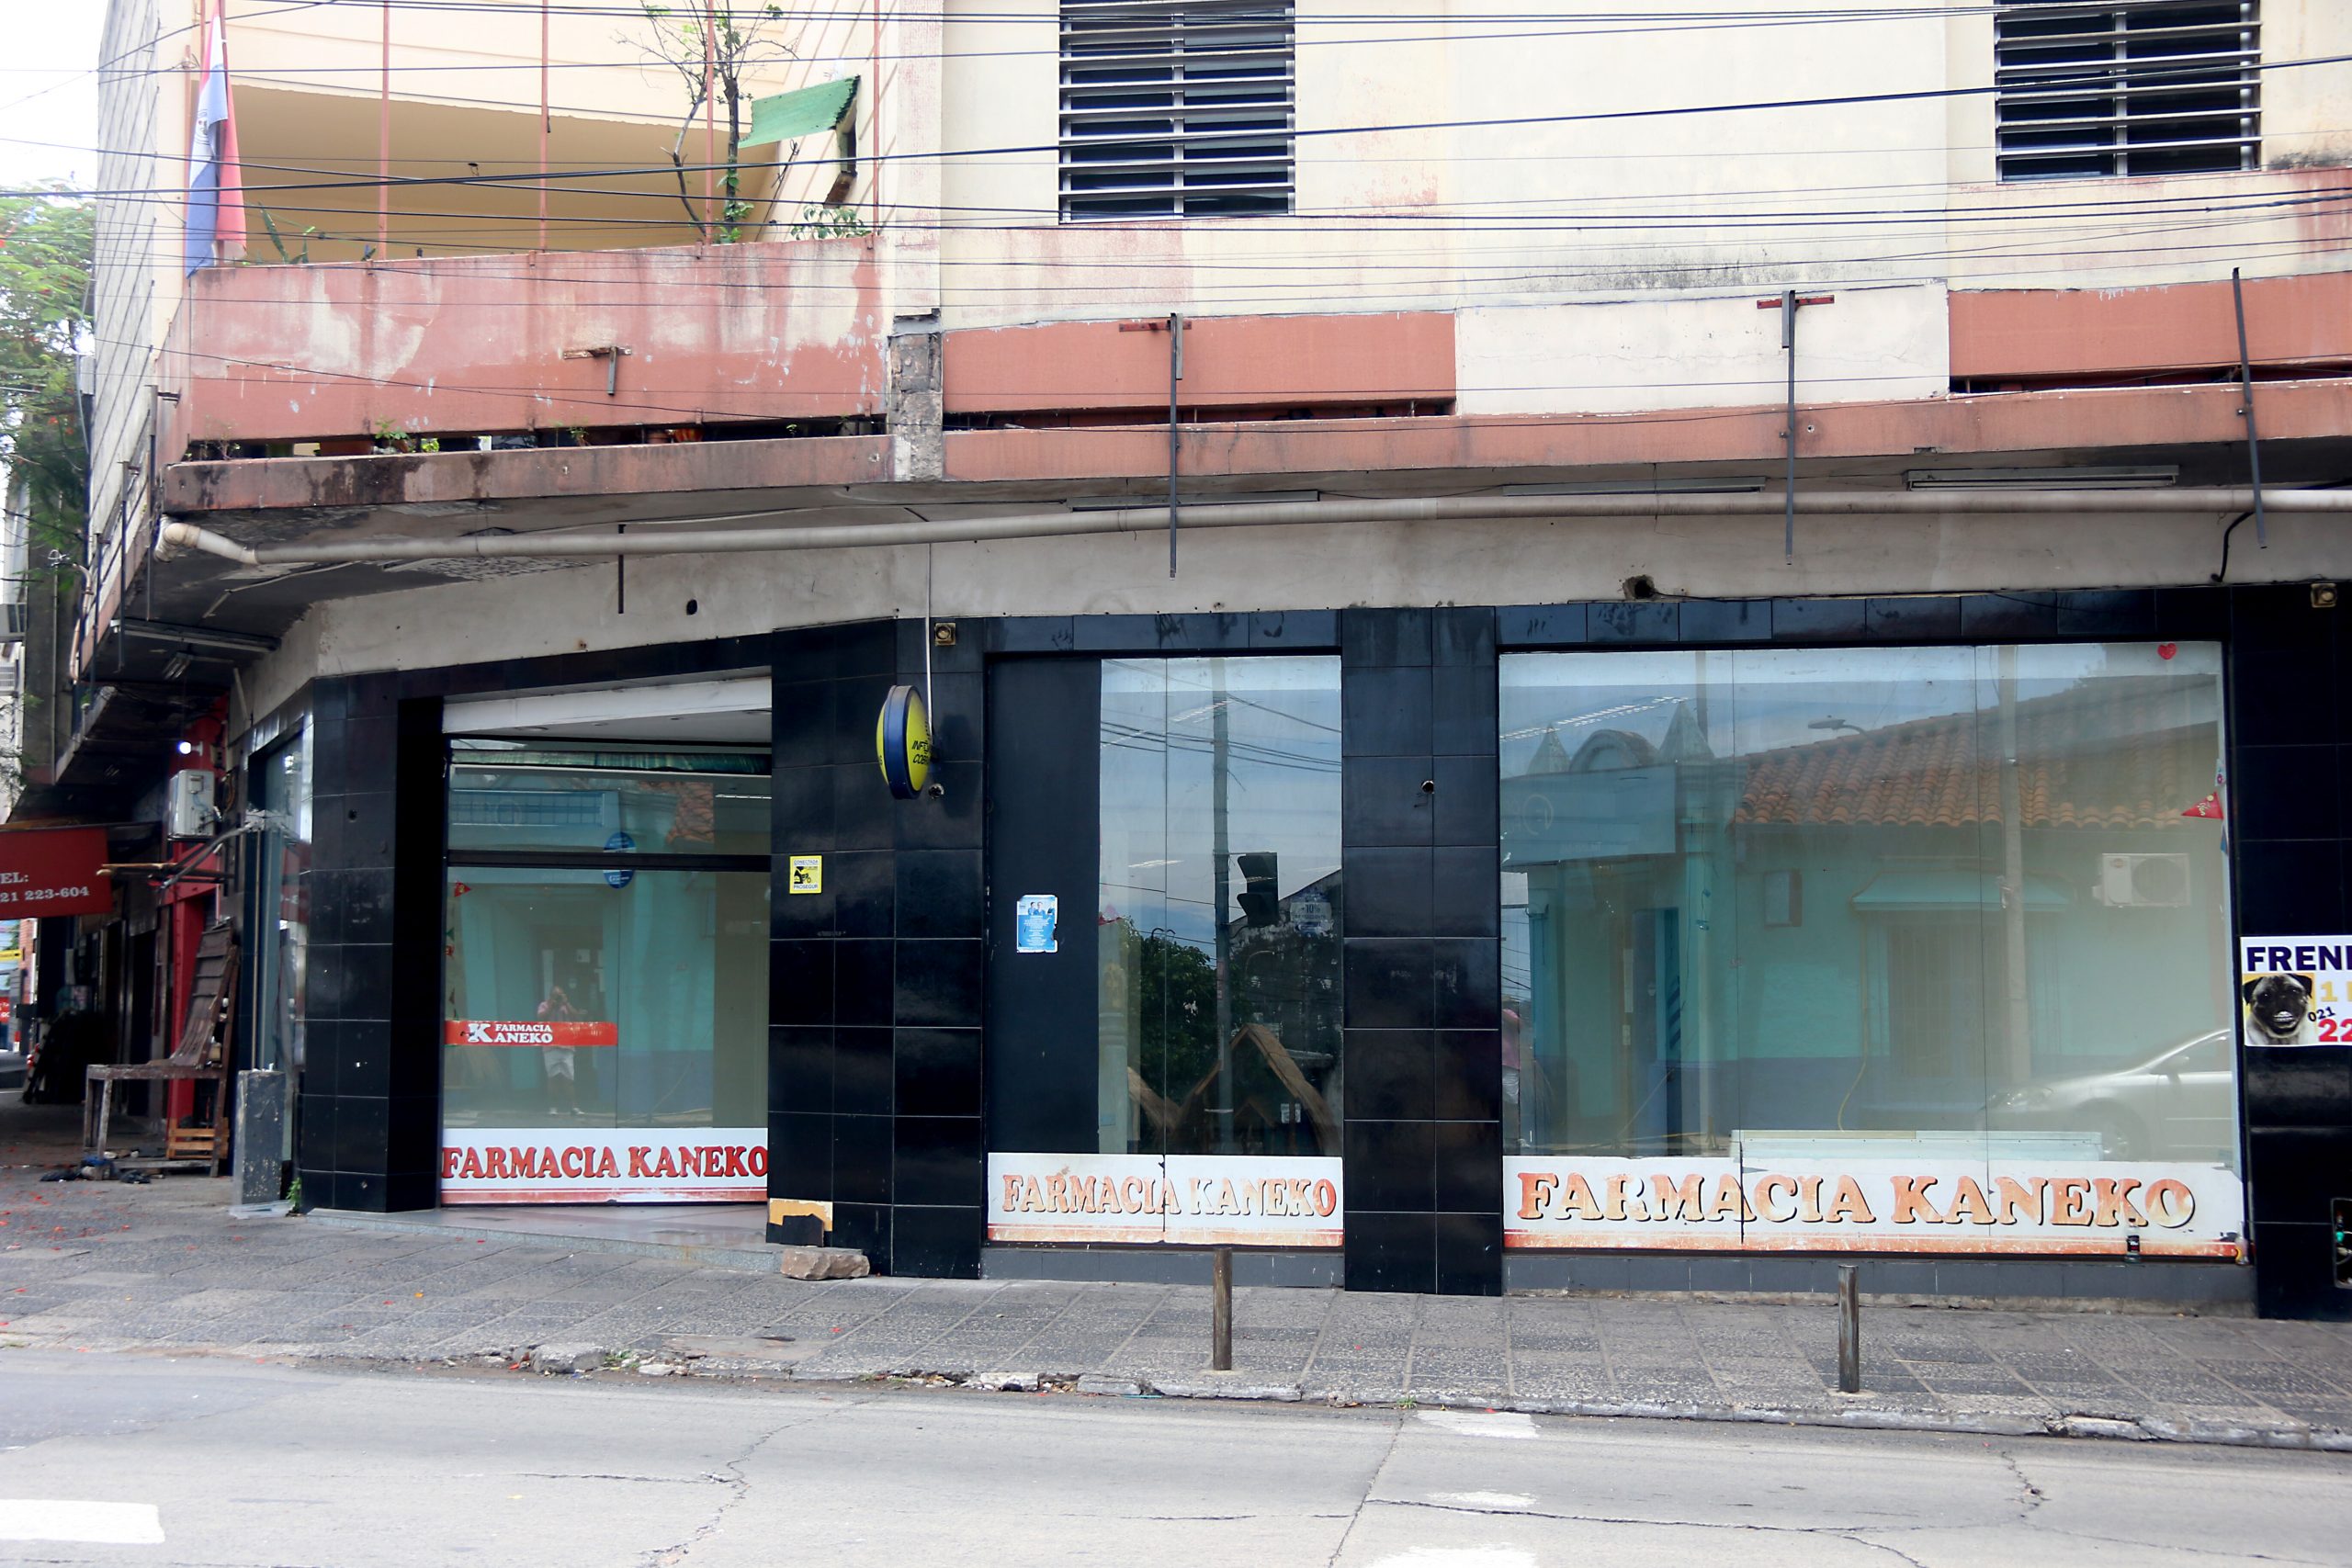 El emblemático local, ubicado en la esquina de las avenidas Perú y Pettirossi, se encuentra vacío. Foto: Gustavo Segovia